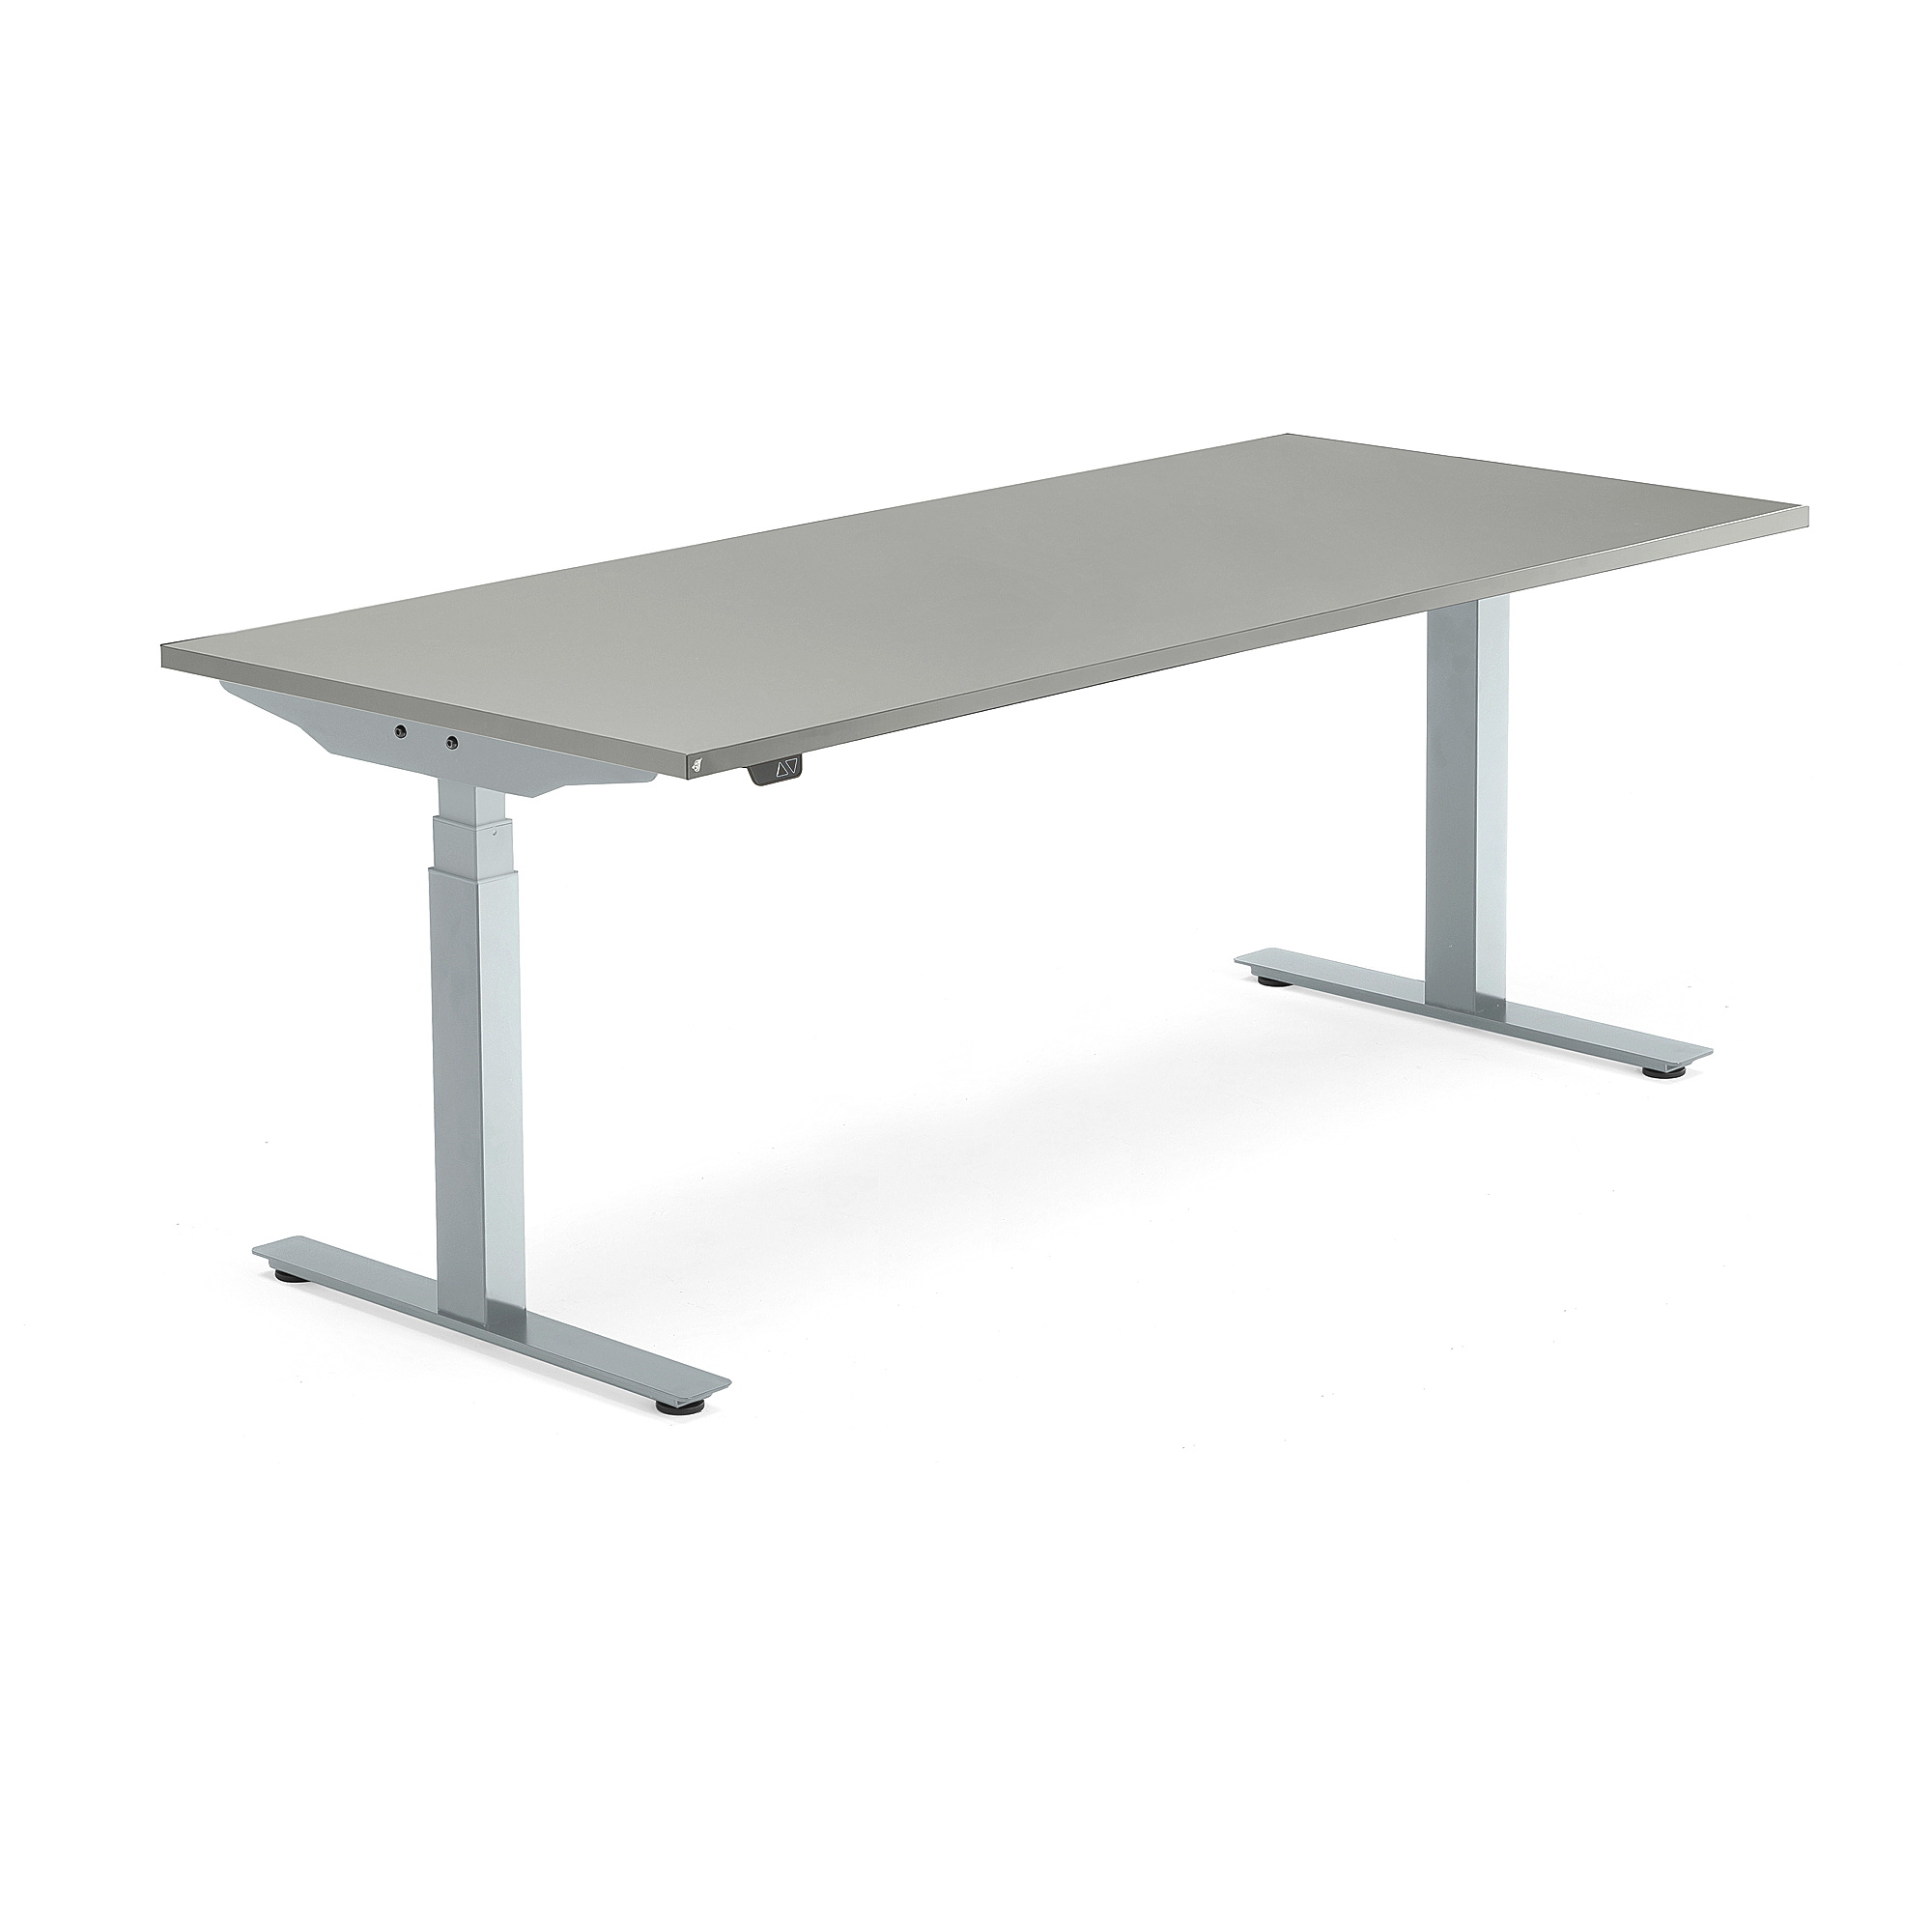 Výškově nastavitelný stůl MODULUS, 1800x800 mm, stříbrný rám, světle šedá